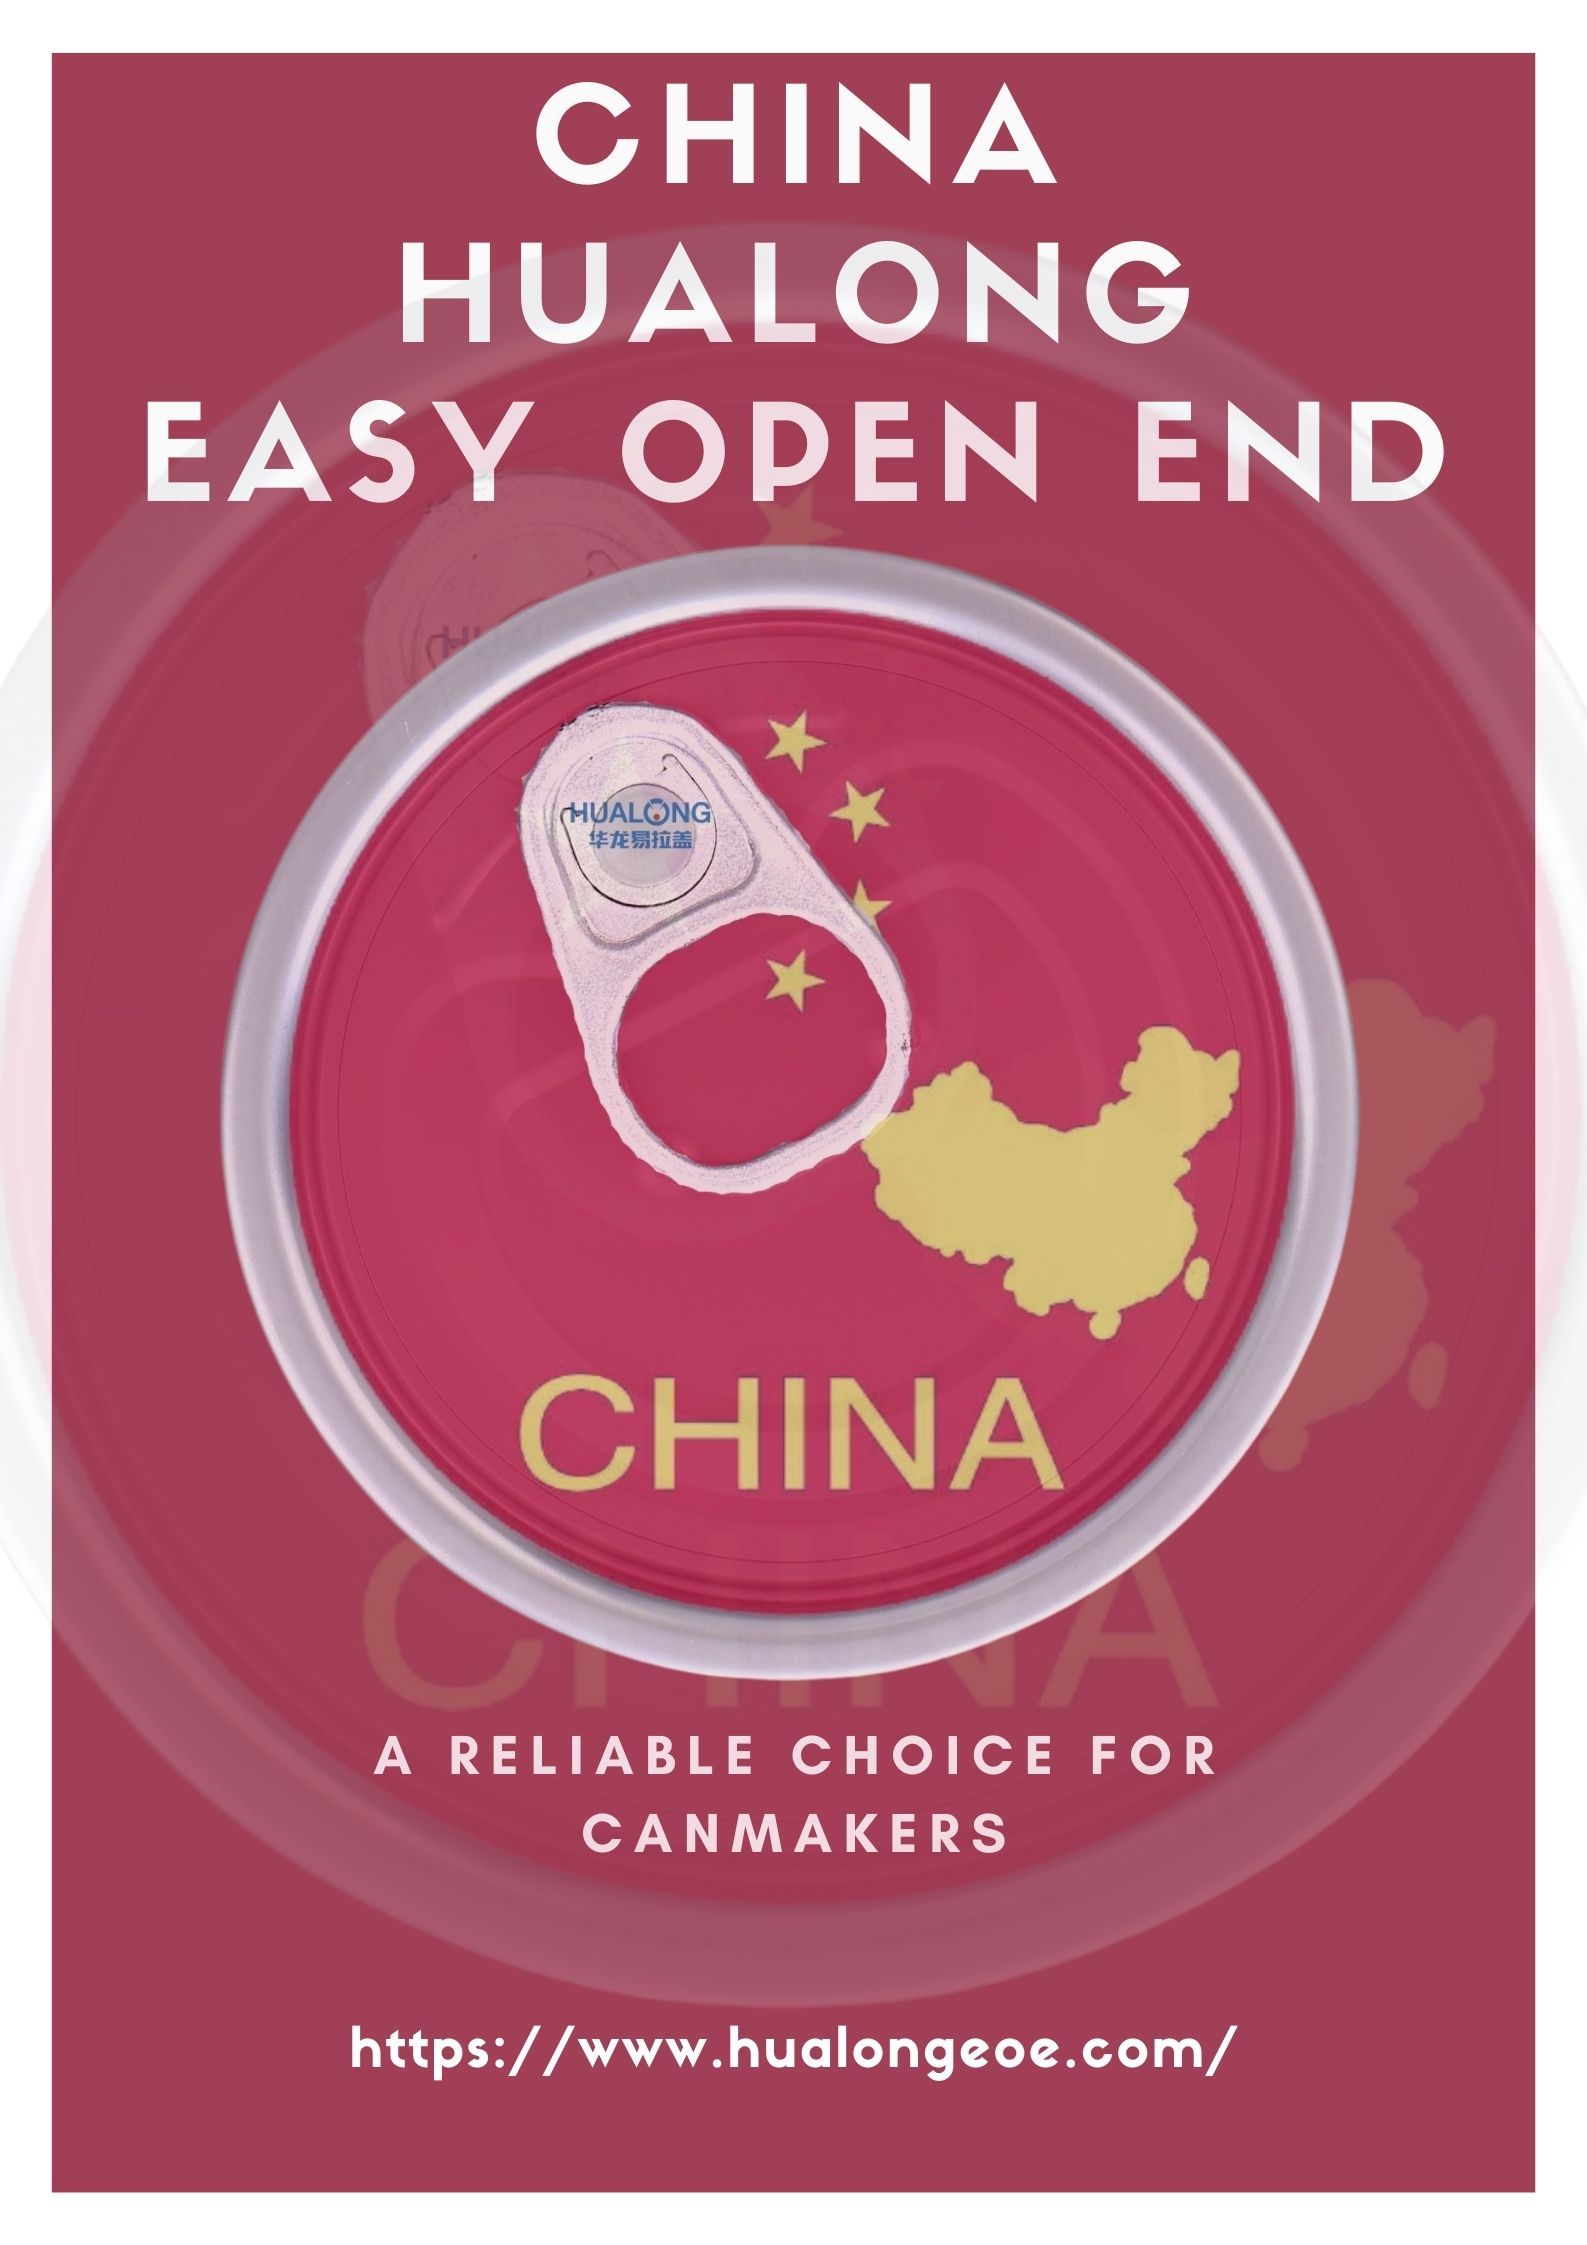 Hualong Easy Open End: In betroubere kar foar canmakers